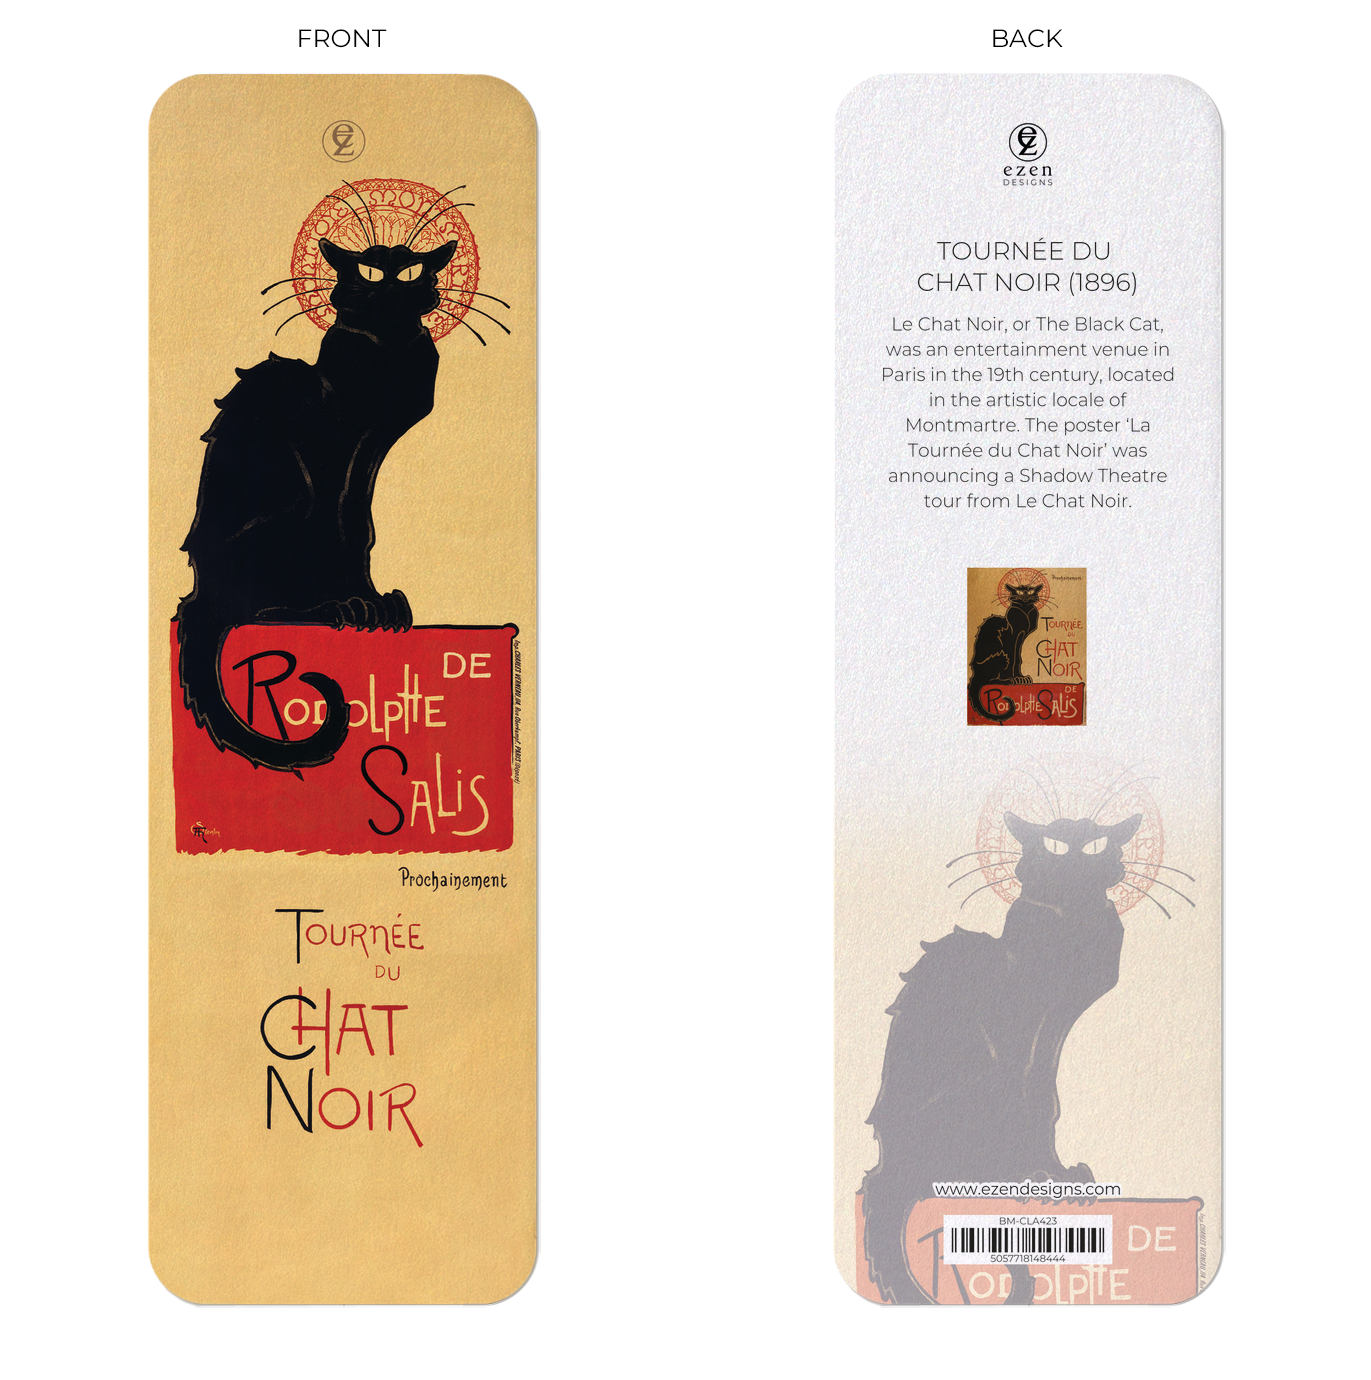 7 Bookmarks - Cat Designs